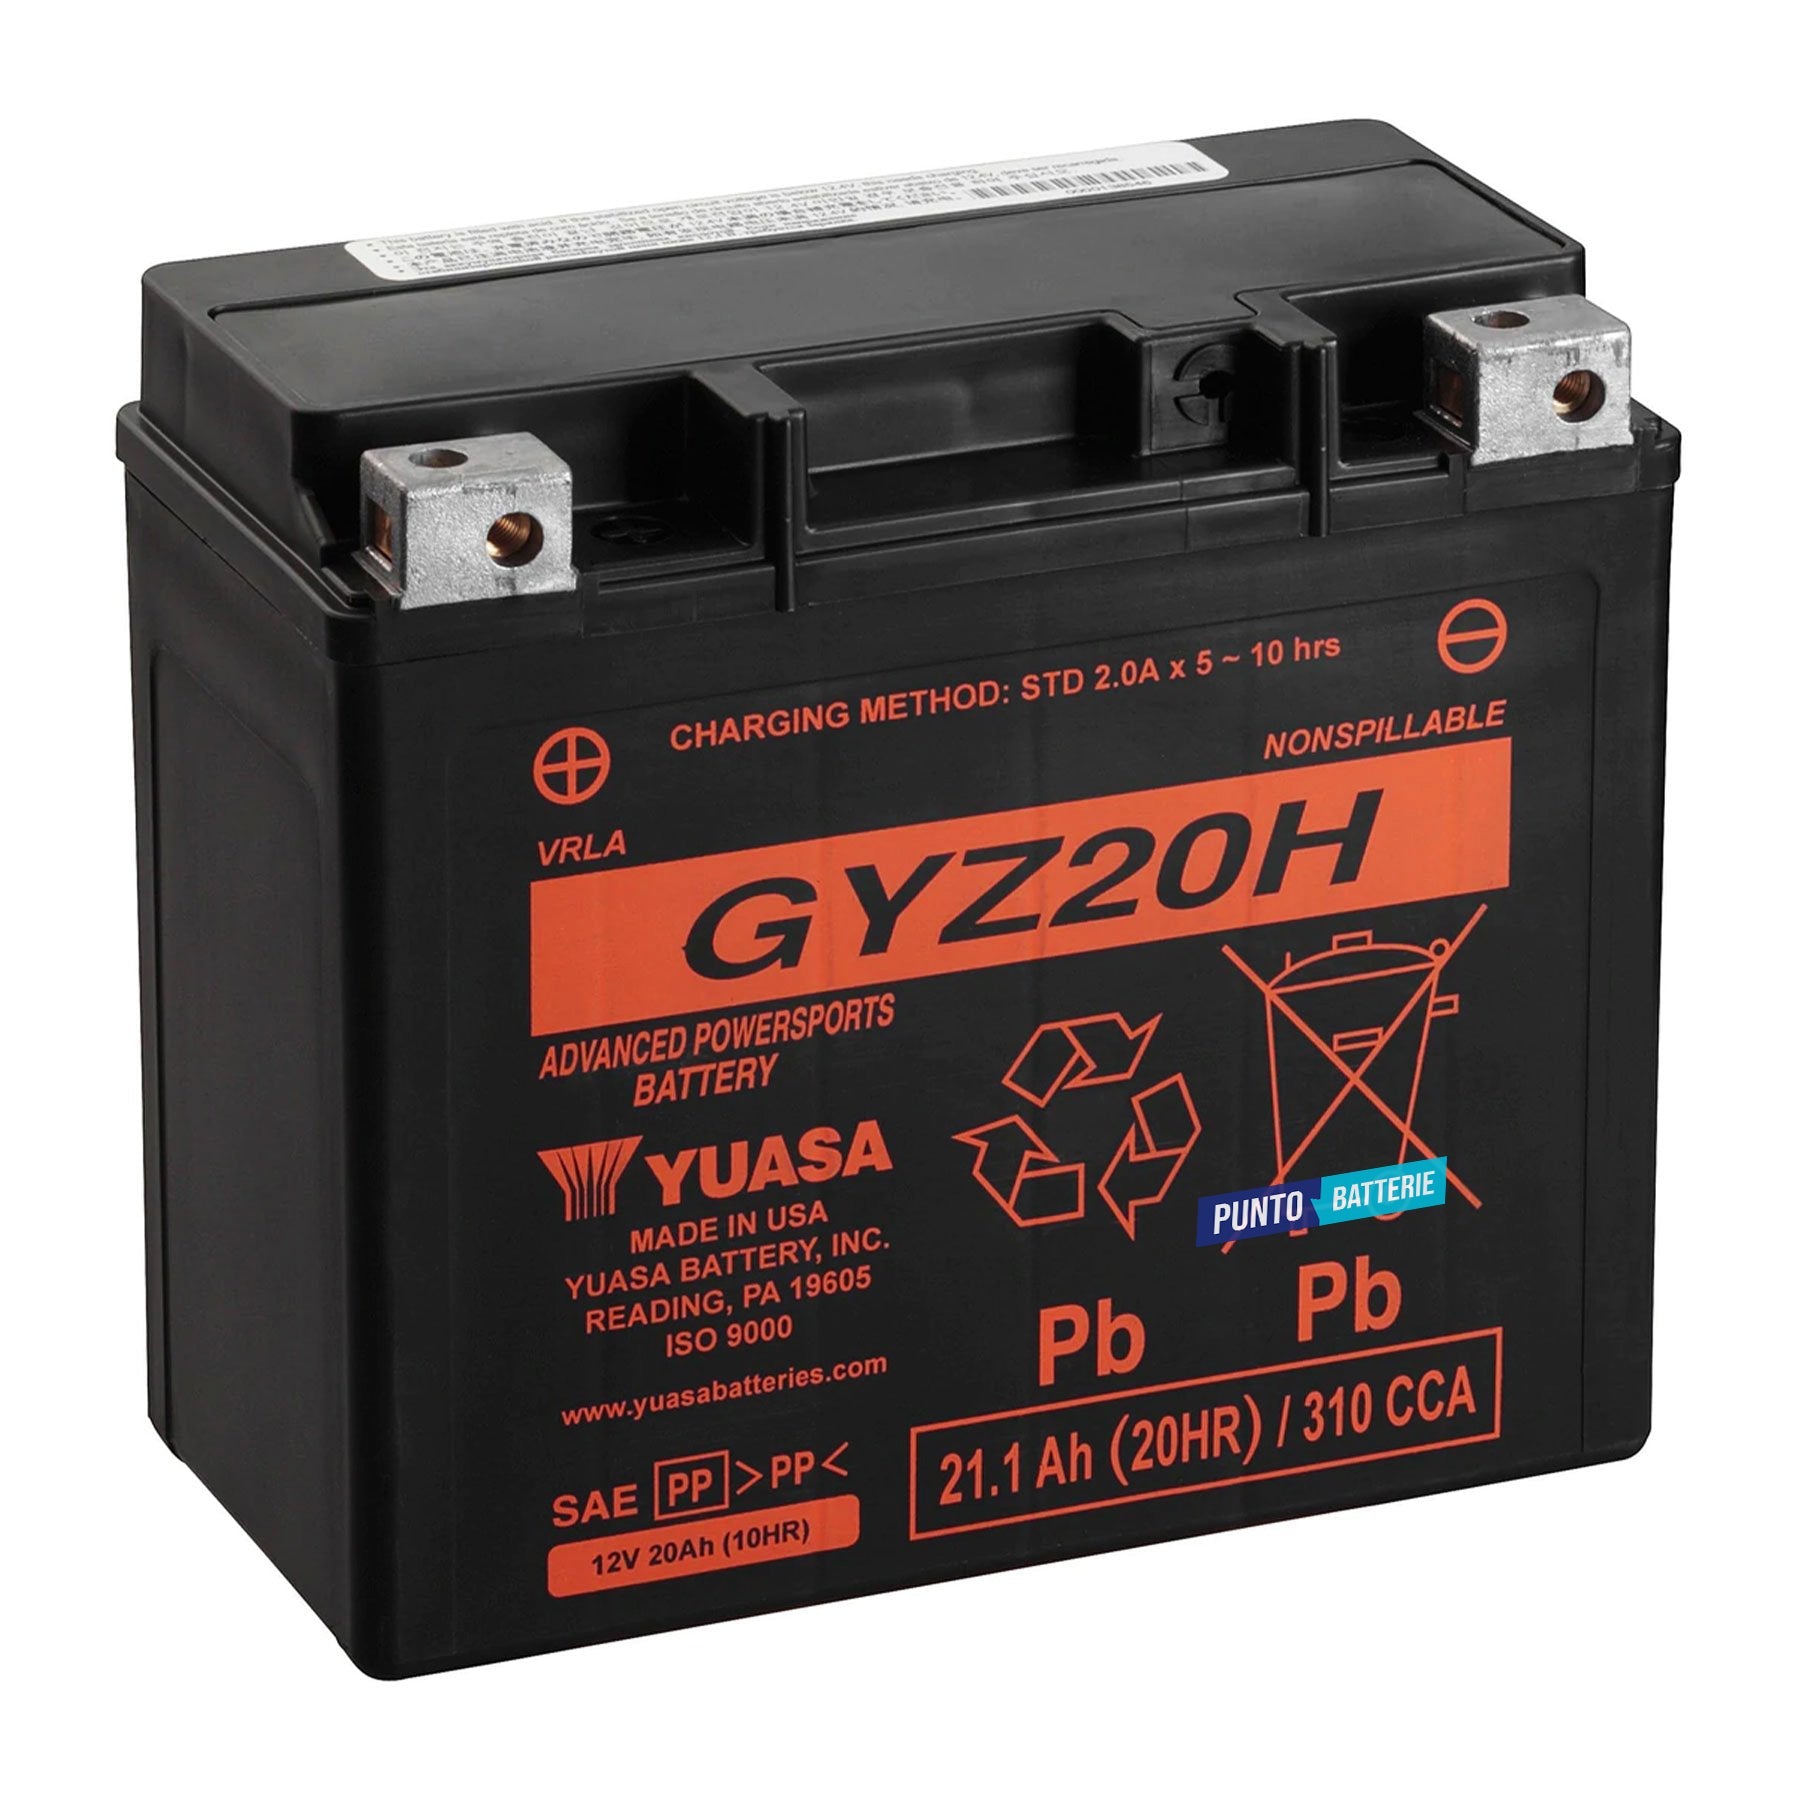 Batteria originale Yuasa GYZ GYZ20H, dimensioni 175 x 87 x 155, polo positivo a sinistra, 12 volt, 20 amperora, 320 ampere. Batteria per moto, scooter e powersport.